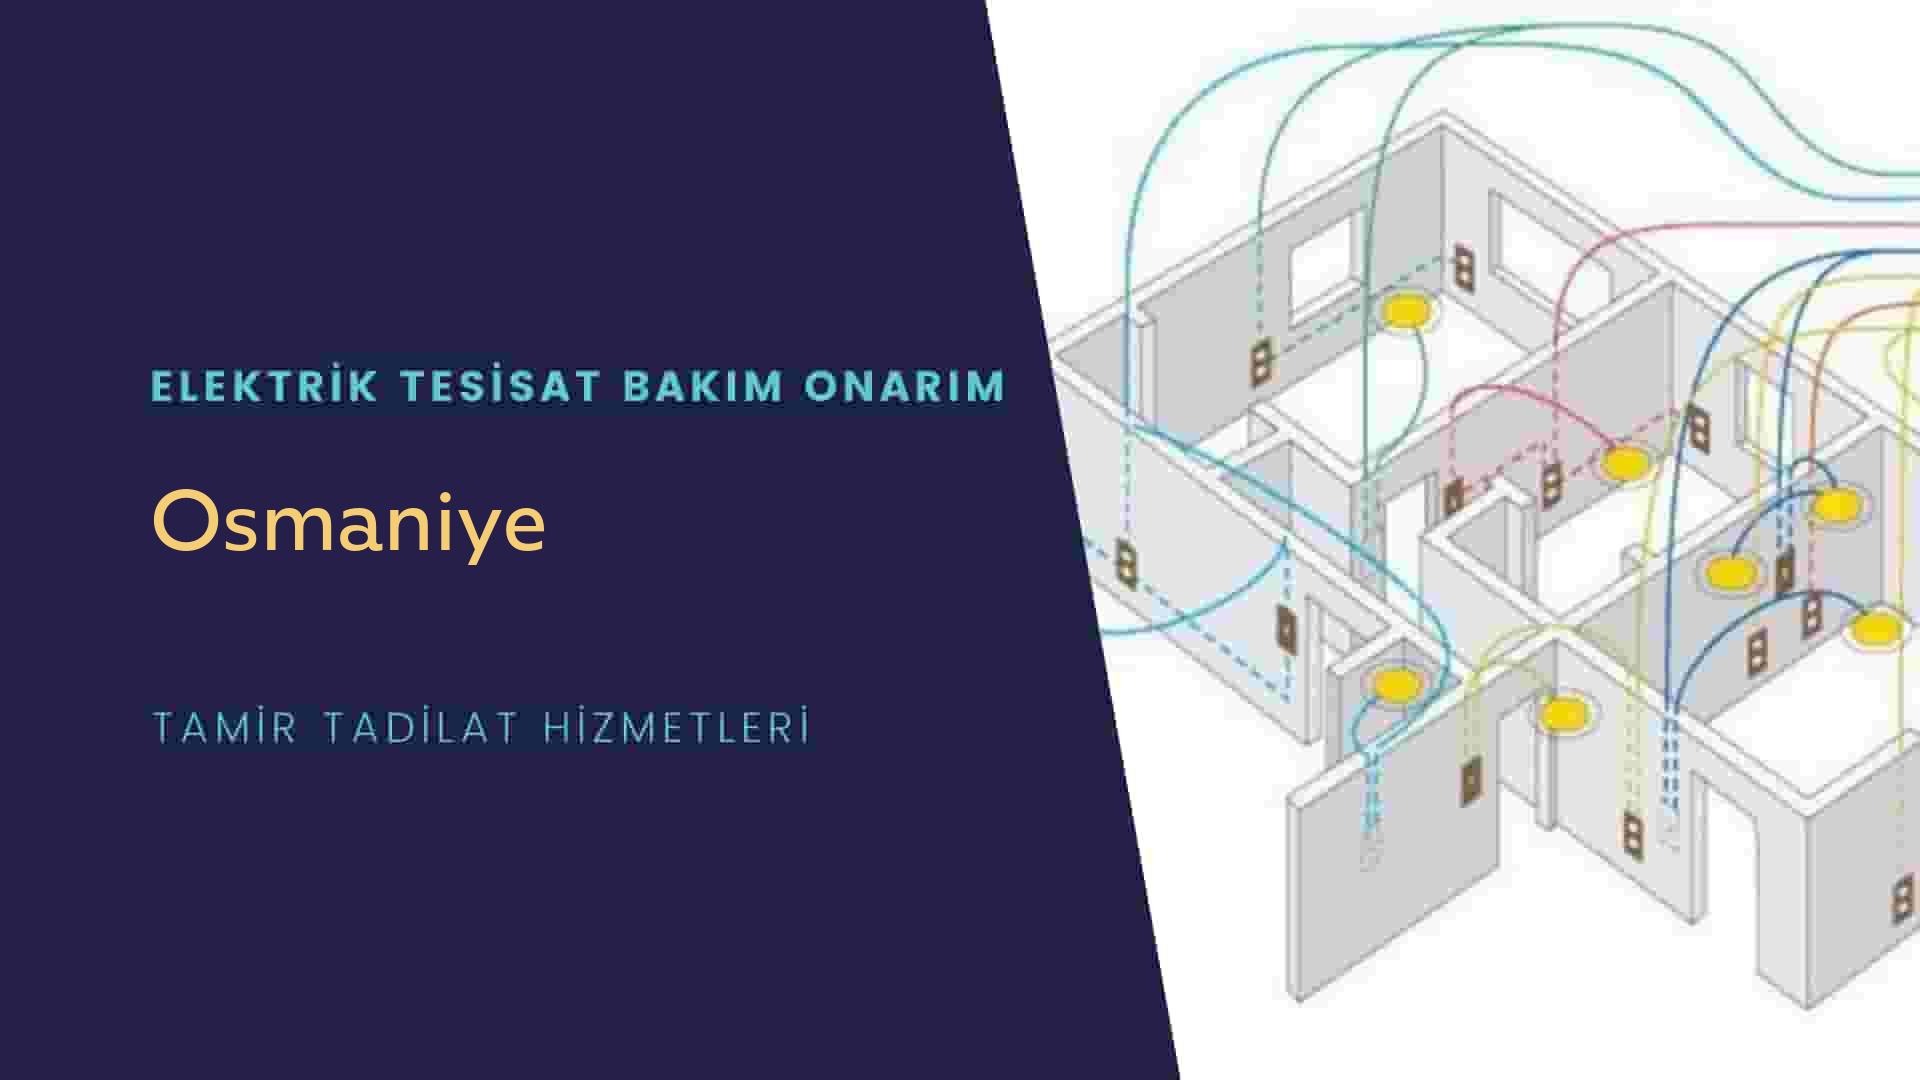 Osmaniye'de elektrik tesisatı ustalarımı arıyorsunuz doğru adrestenizi Osmaniye elektrik tesisatı ustalarımız 7/24 sizlere hizmet vermekten mutluluk duyar.